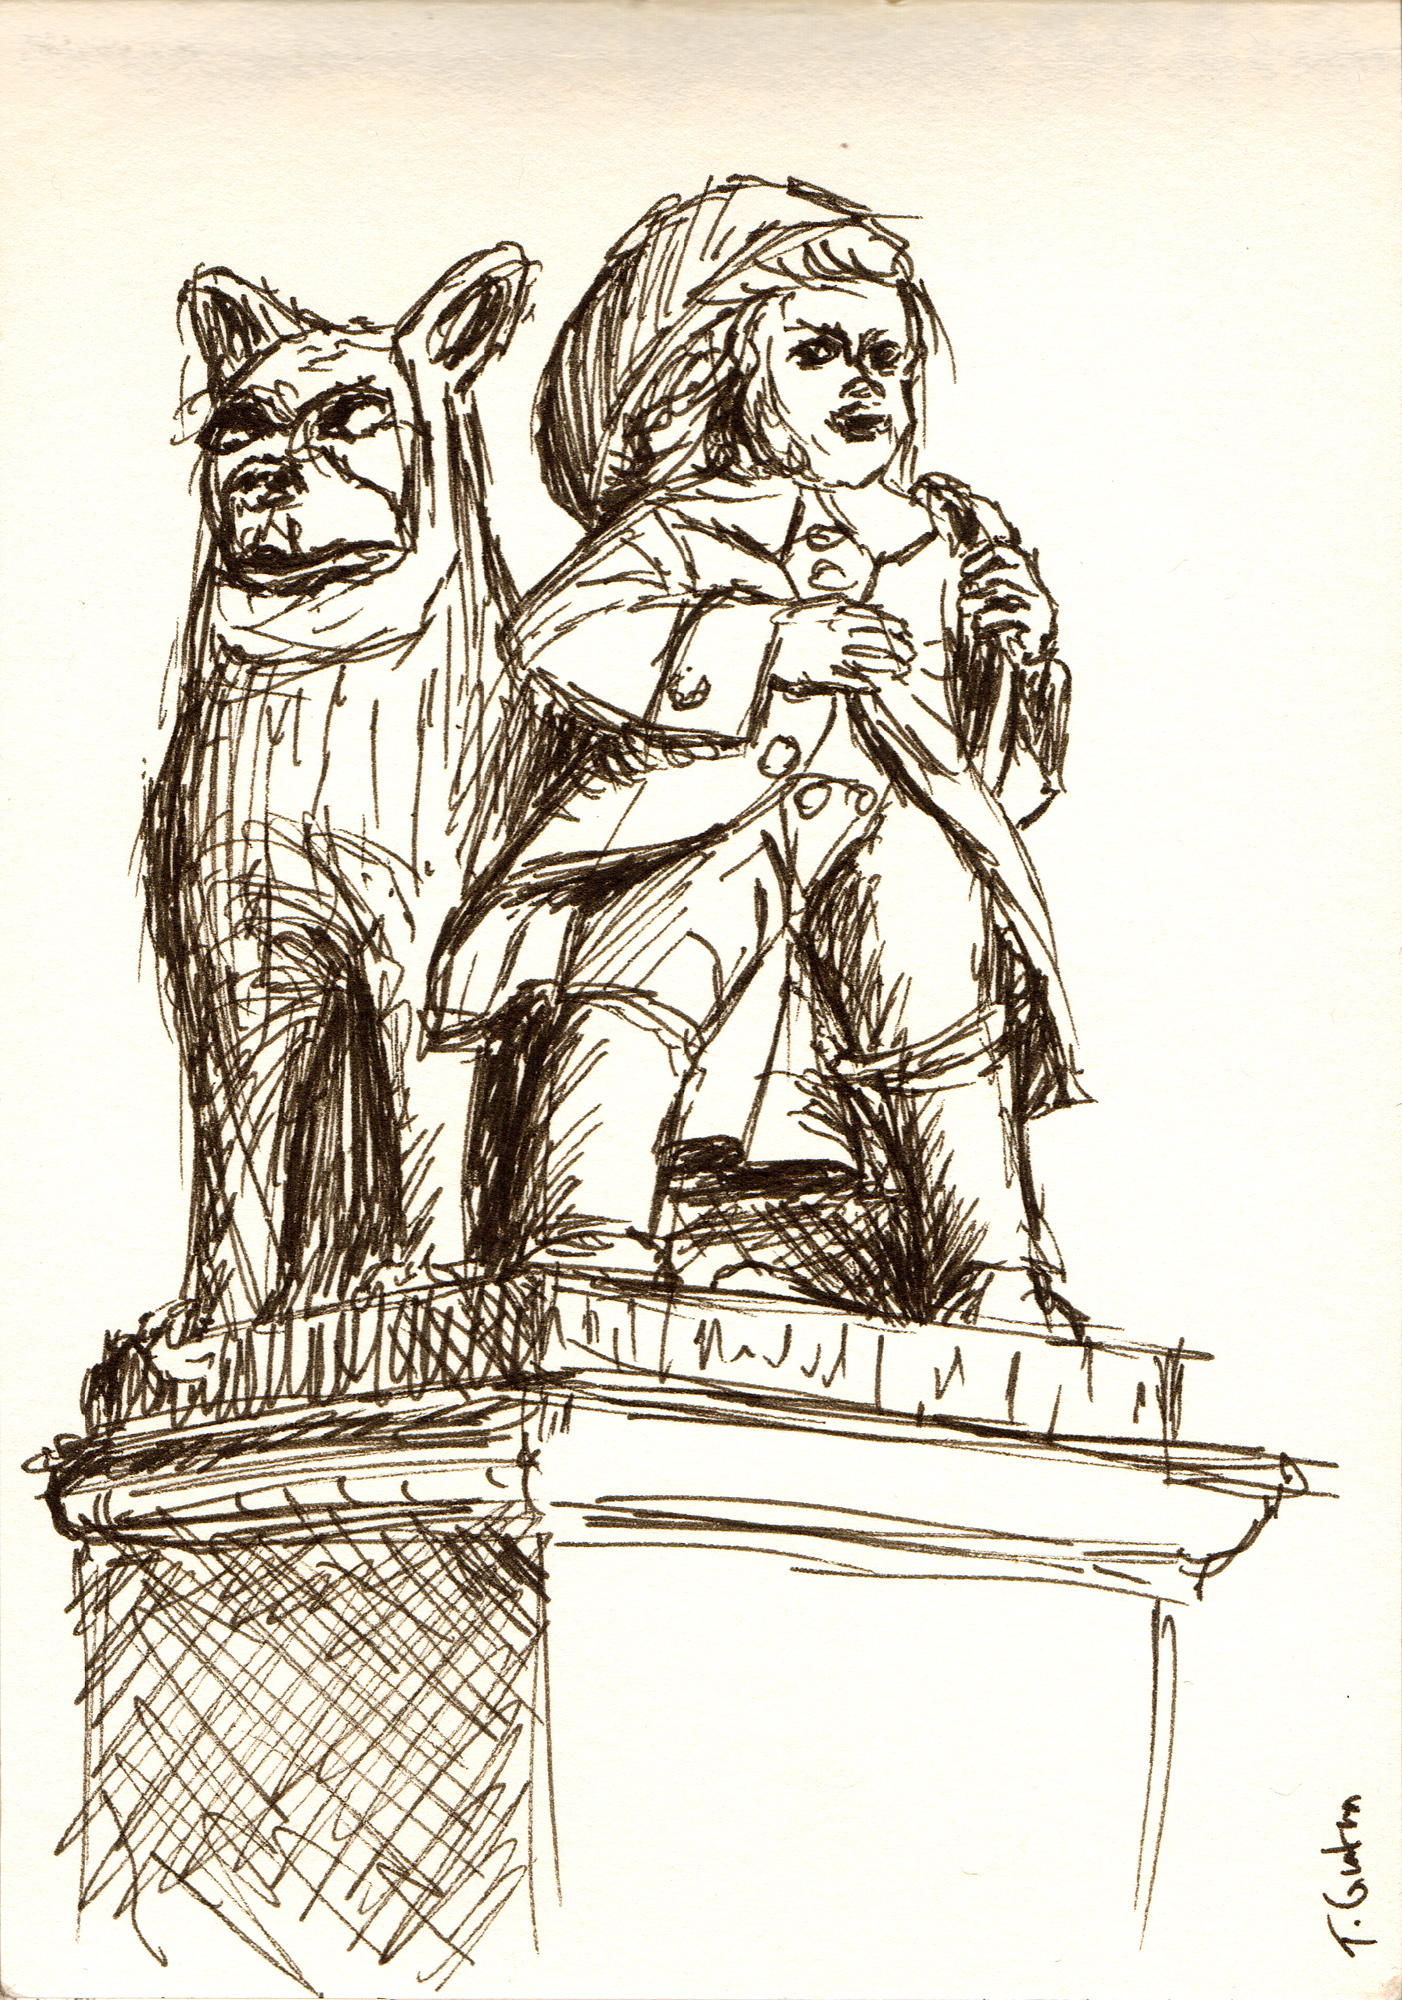 Zeichnung einer Steinfigur, die einen Knaben mit Hund zeigt